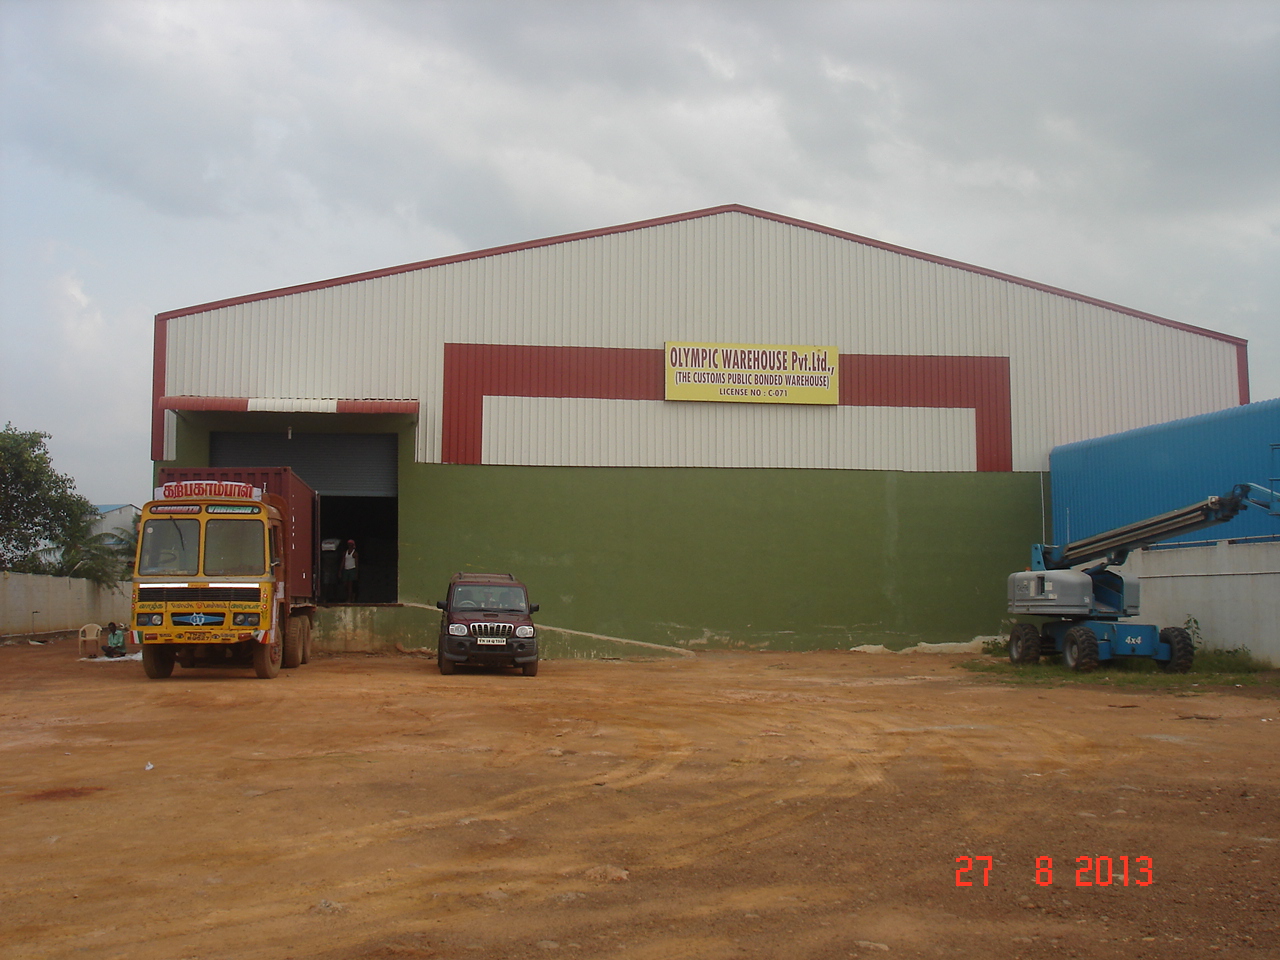 Olymic Warehouse Image 26